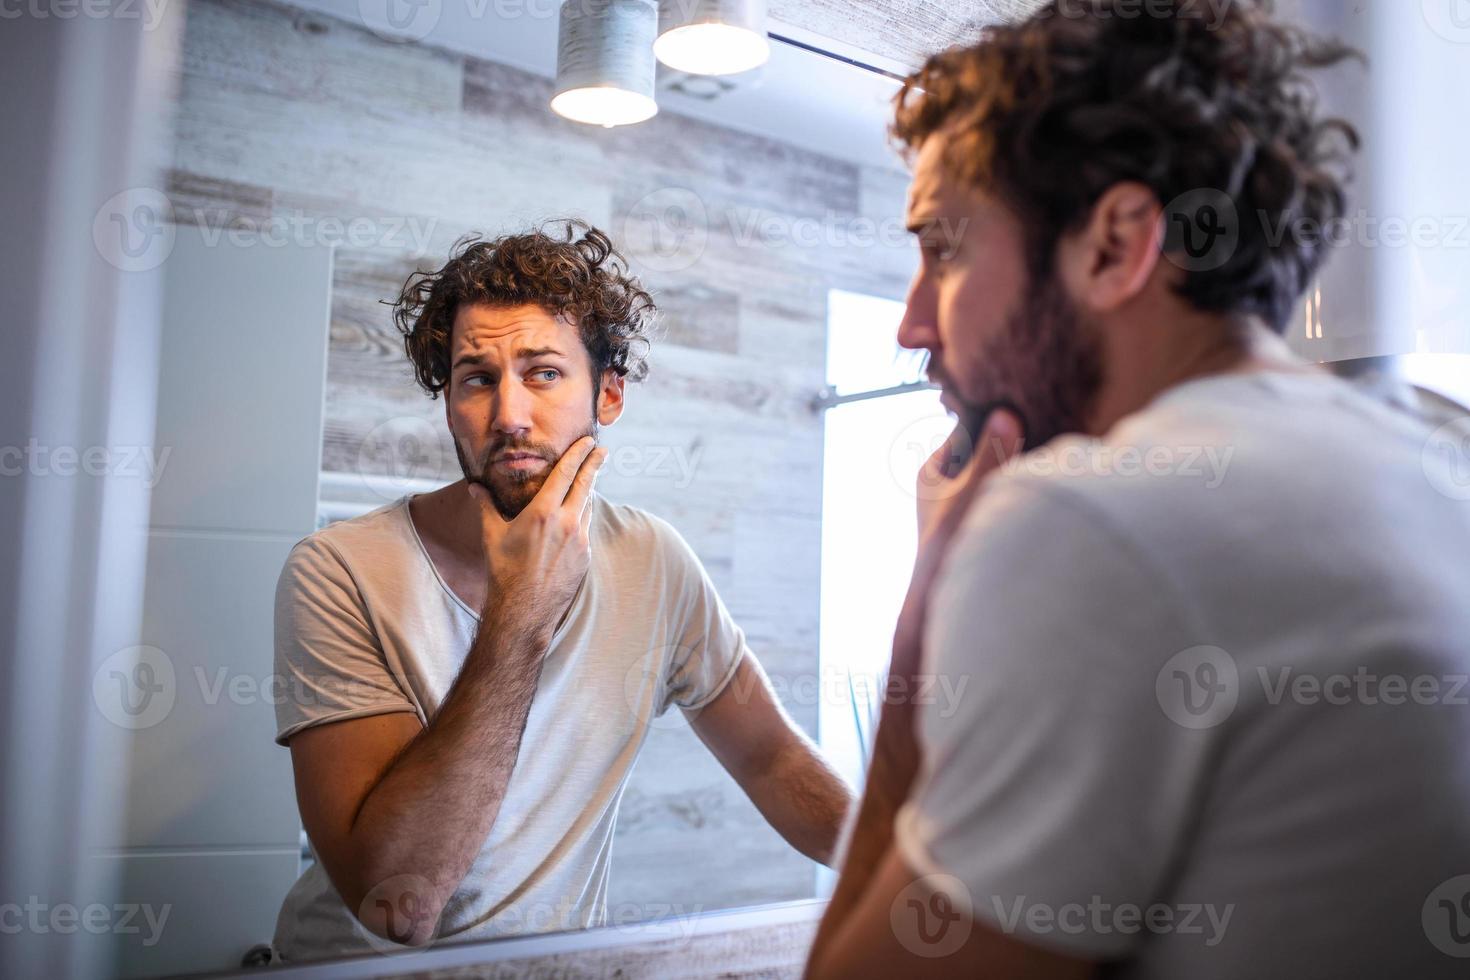 hygiène du matin, bel homme dans la salle de bain regardant dans le miroir. reflet d'un bel homme avec une barbe regardant un miroir et touchant le visage dans la toilette de la salle de bain photo